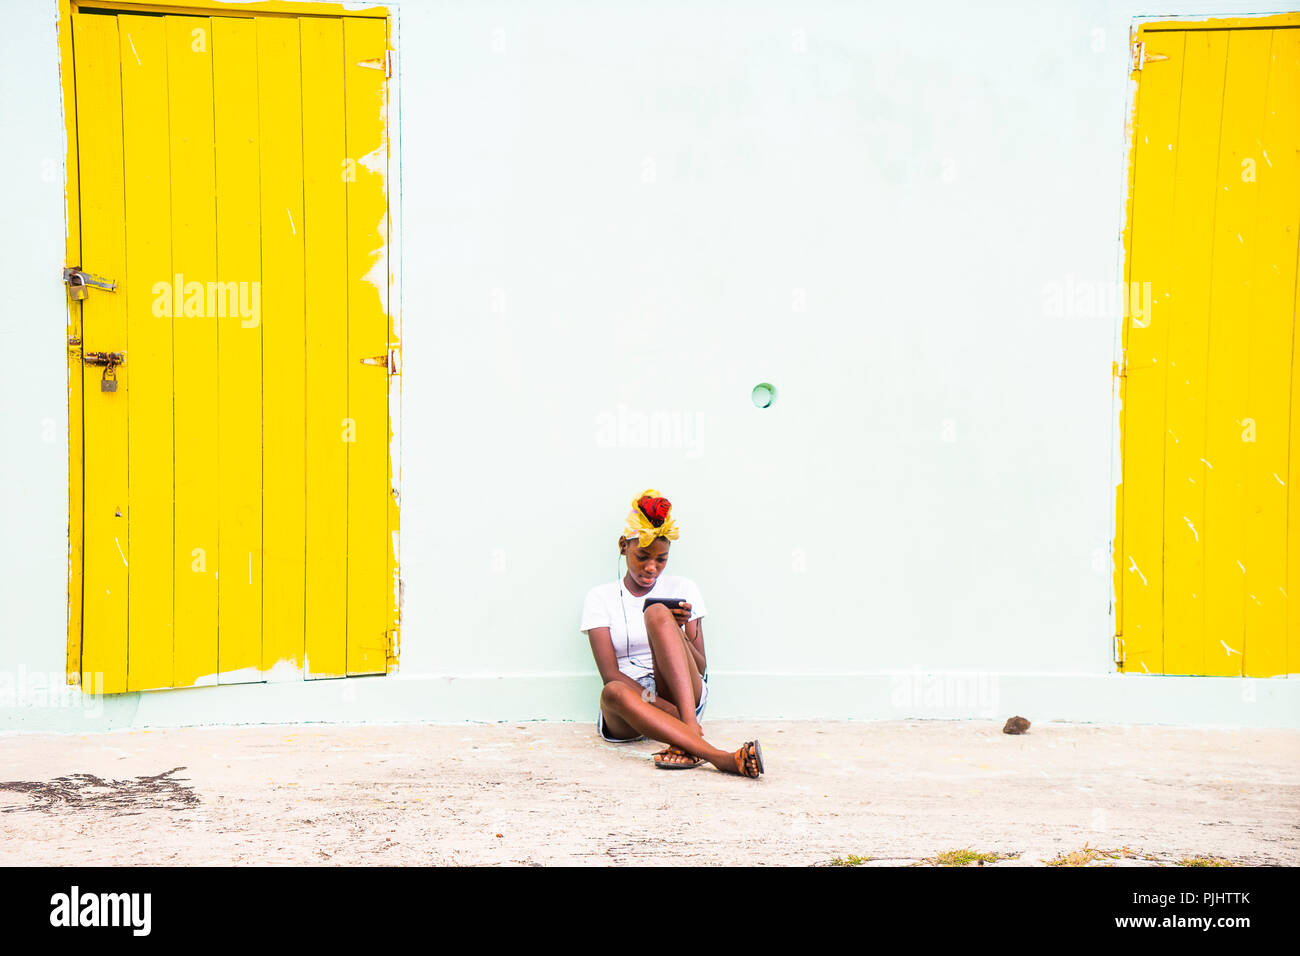 Adolescente sentada abajo, Salina Bay, Mayreau, San Vicente y las Granadinas, West Indies Foto de stock